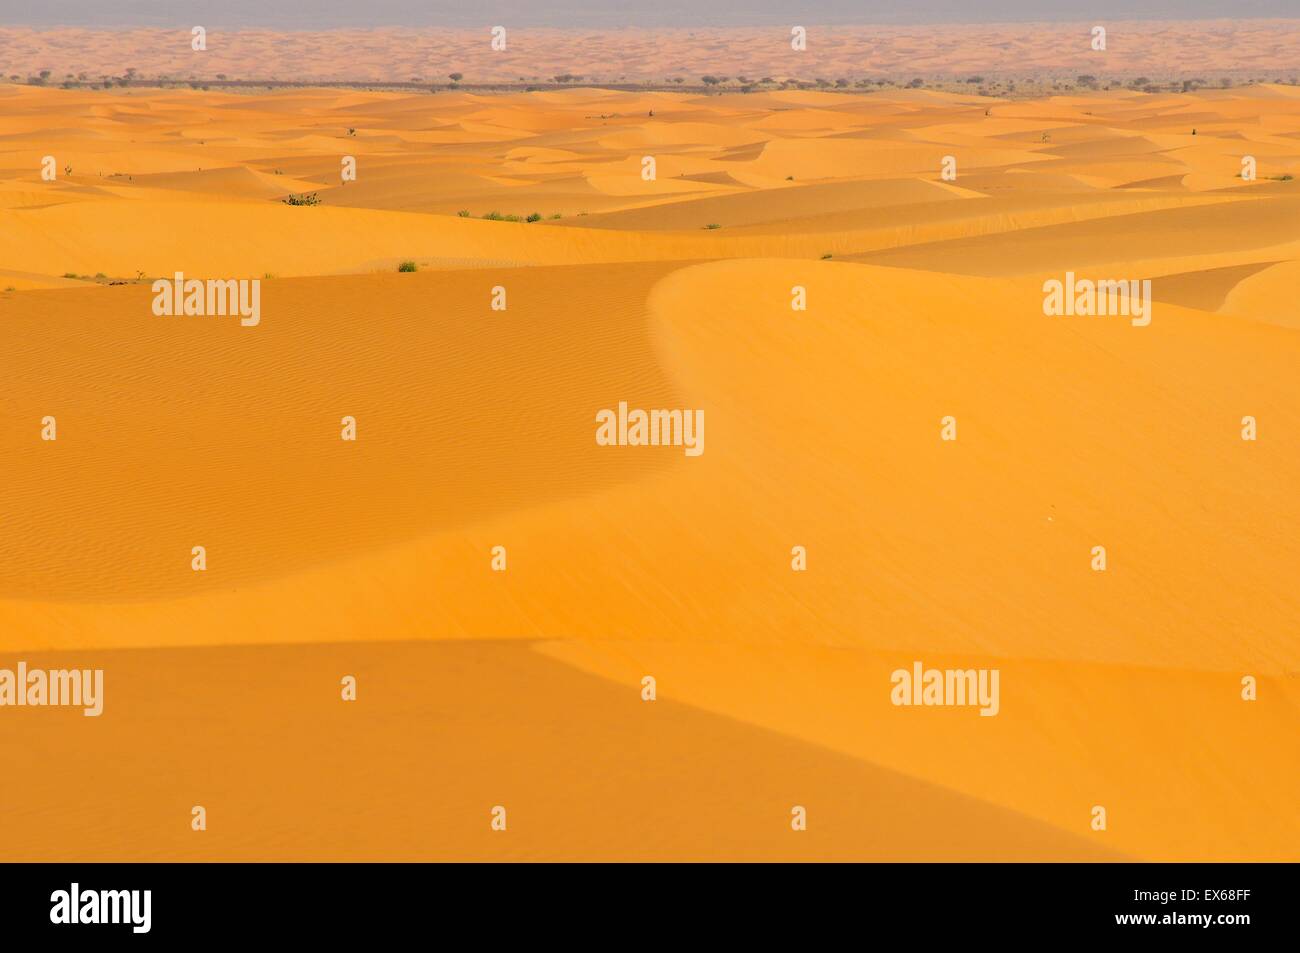 Paysage désertique avec dunes de sable, route de Atar à Tidjikja, région d'Adrar, Mauritanie Banque D'Images